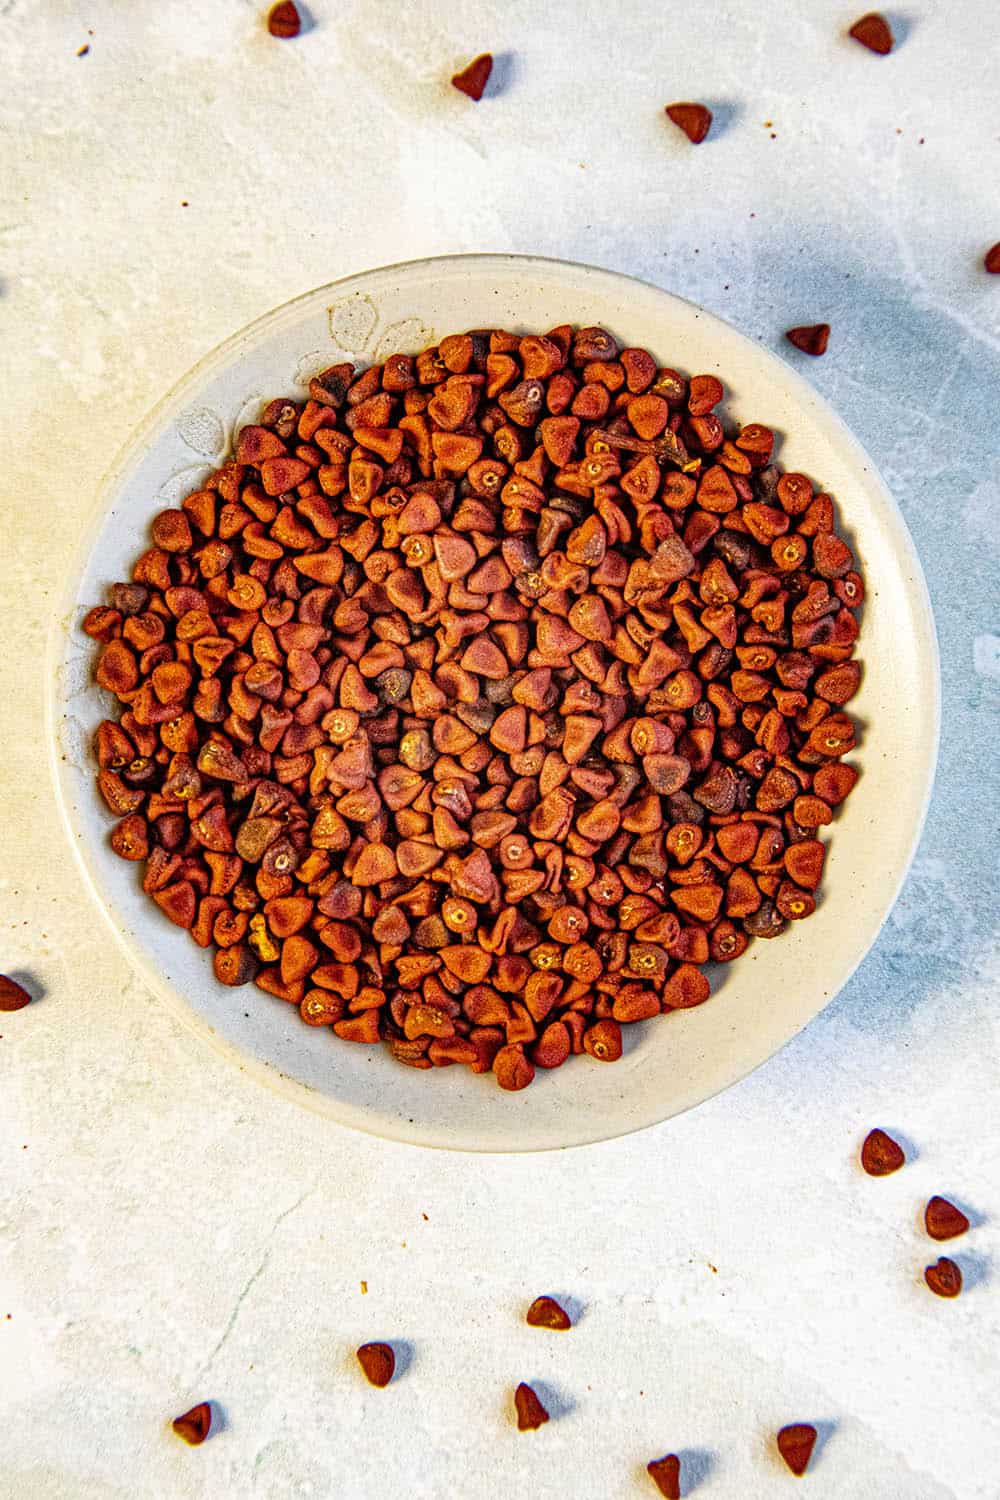 Annatto Seeds (aka Achiote) in a bowl